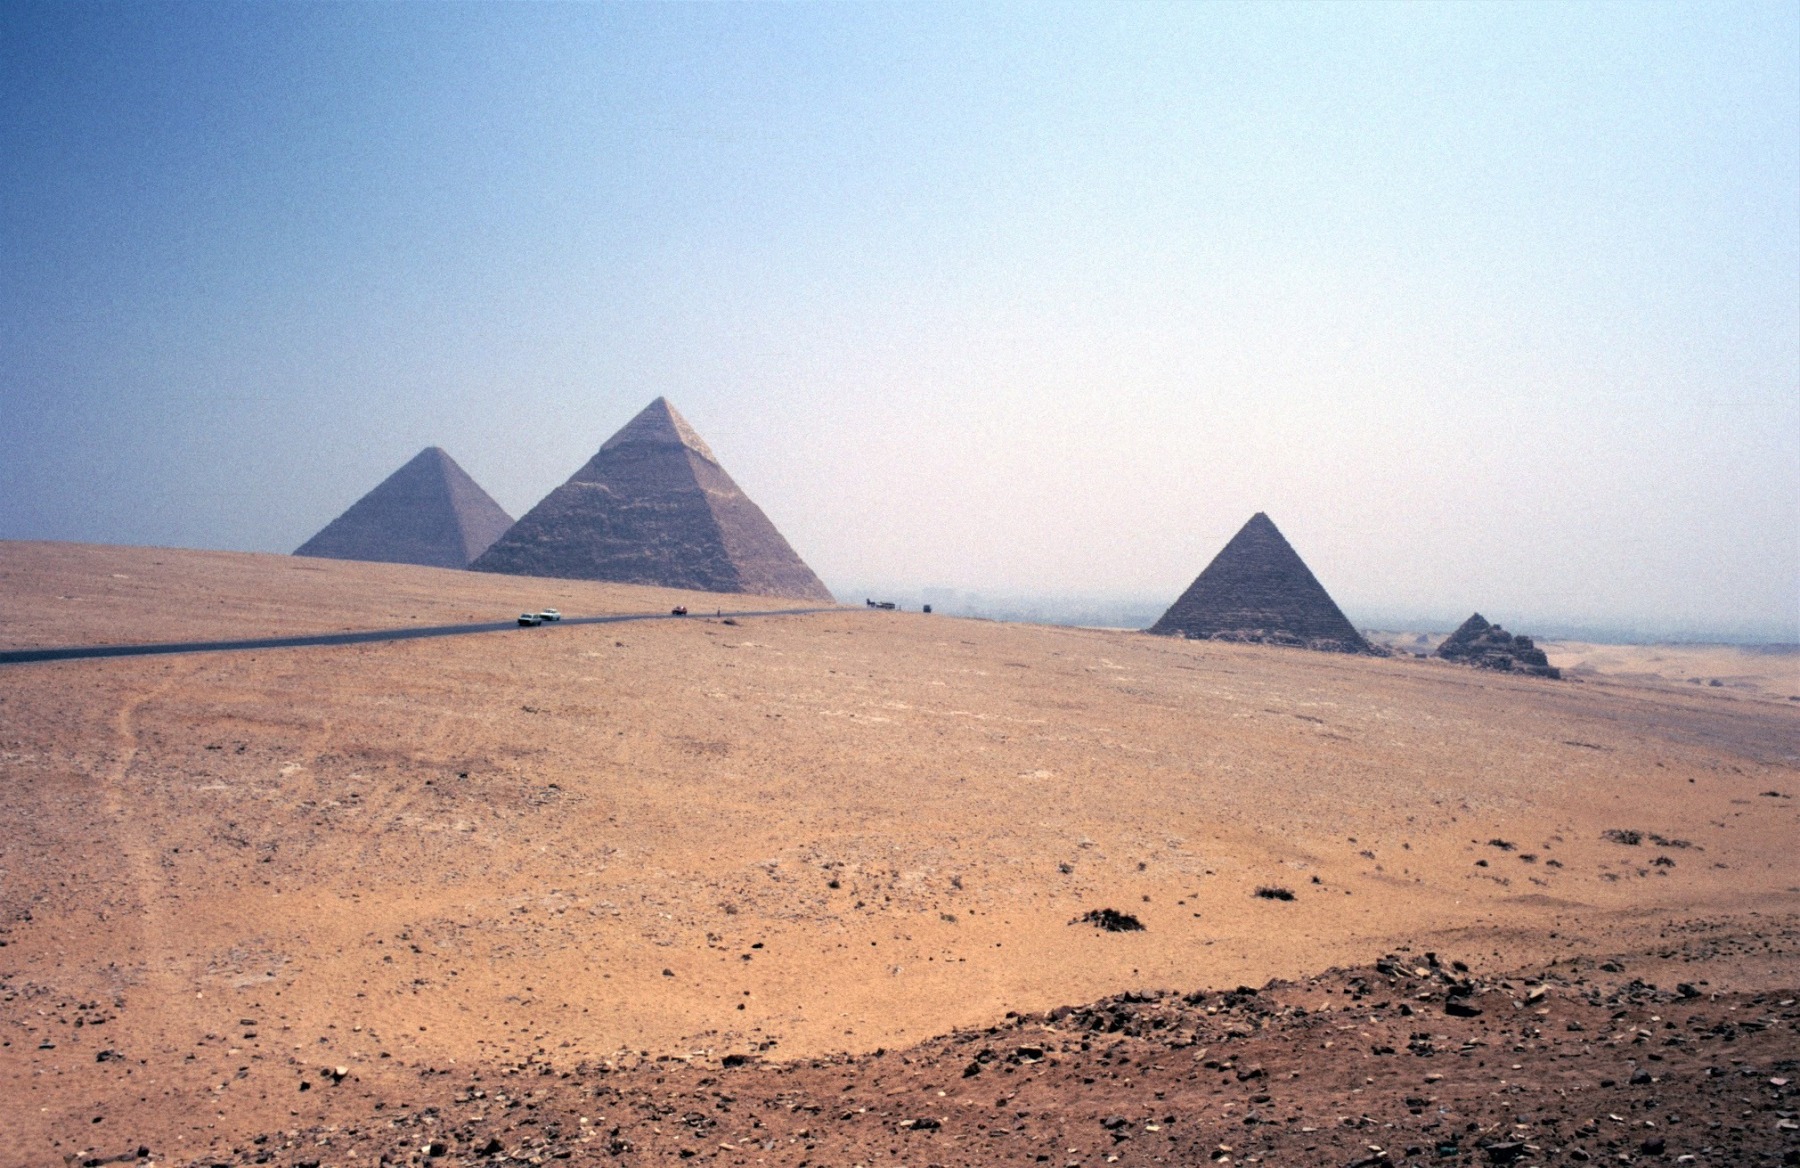 Les pyramides de Gizeh, aussi appelées complexe pyramidal de Gizeh, sont l'ensemble des pyramides égyptiennes situées dans la nécropole de Gizeh sur le plateau de Gizeh. Ce complexe pyramidal égyptien est classé au patrimoine mondial de l'humanité depuis 1979. Les trois plus grandes et plus célèbres des pyramides d'Égypte, celles de Khéops, Khéphren et Mykérinos, se trouvent sur la nécropole de Gizeh.